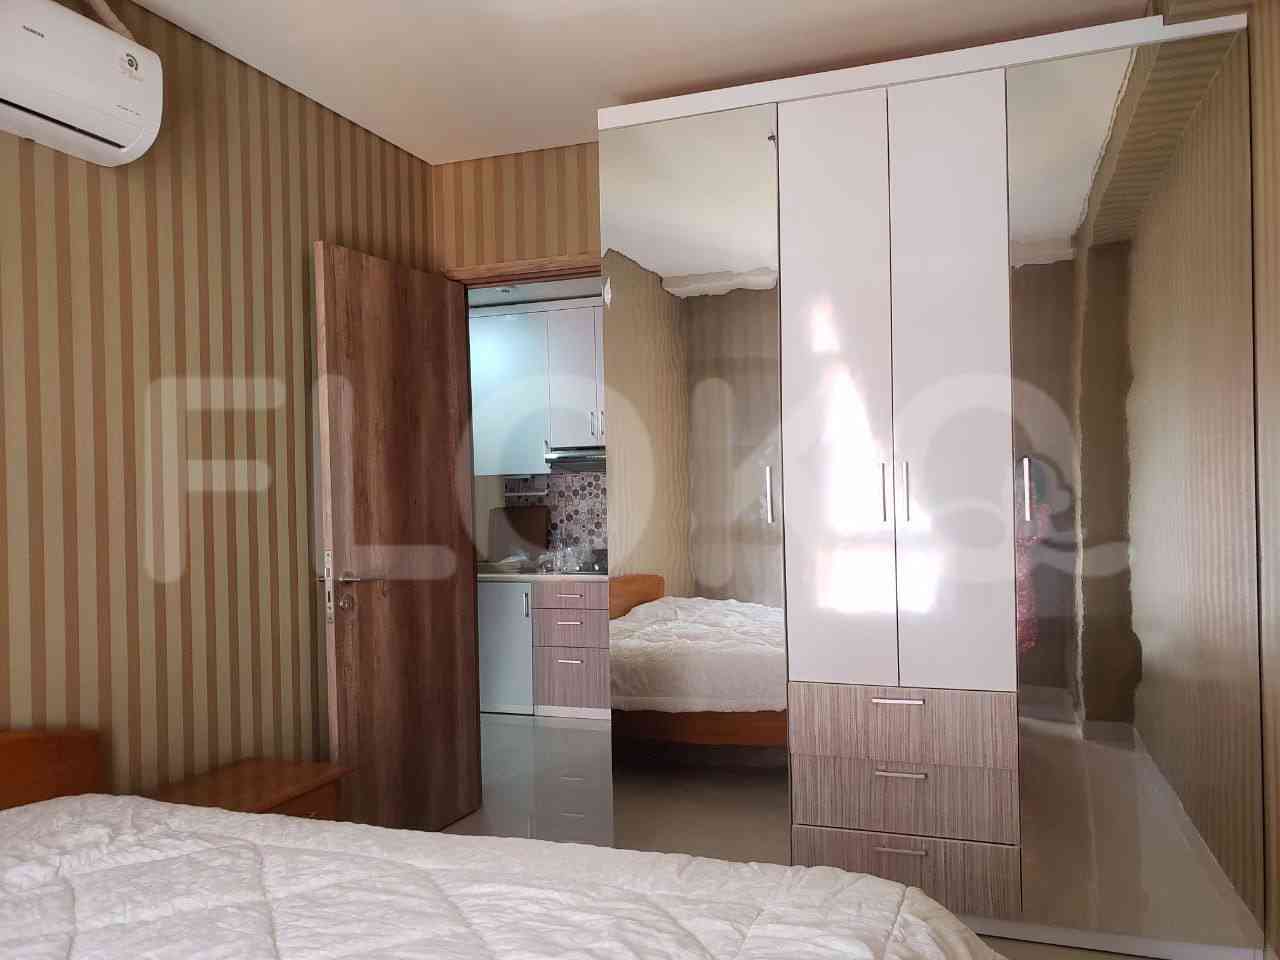 1 Bedroom on 18th Floor for Rent in Pejaten Park Residence - fpe83c 2